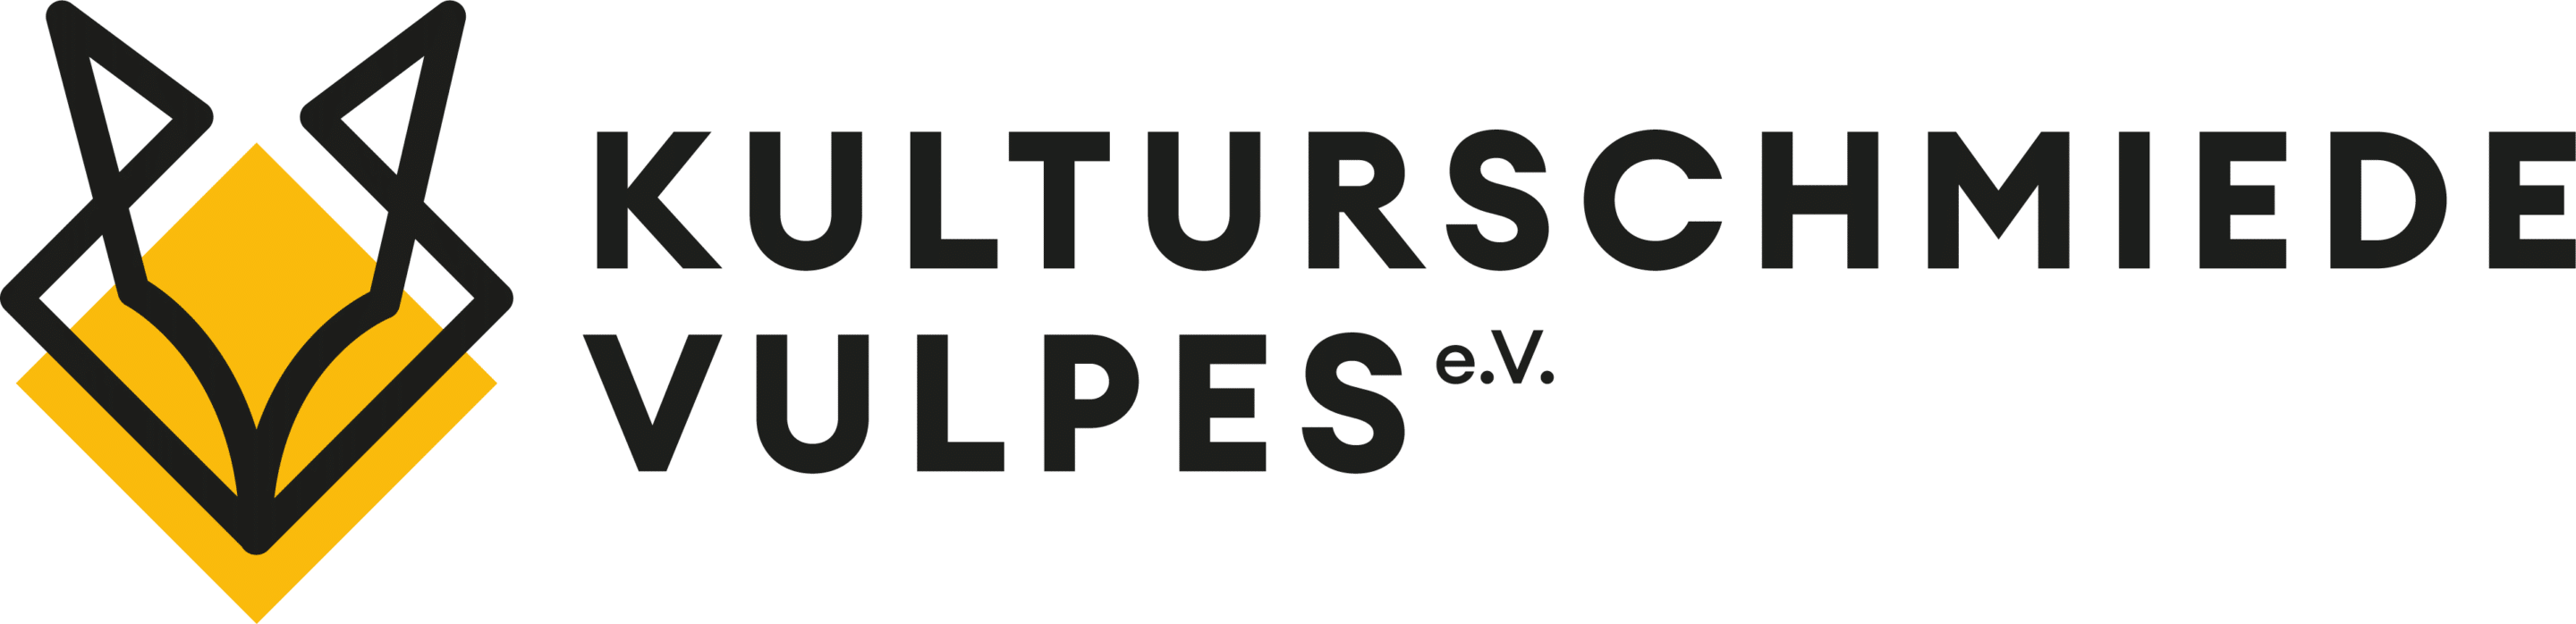 Kultuschmiede Vulpes e.V. Logo